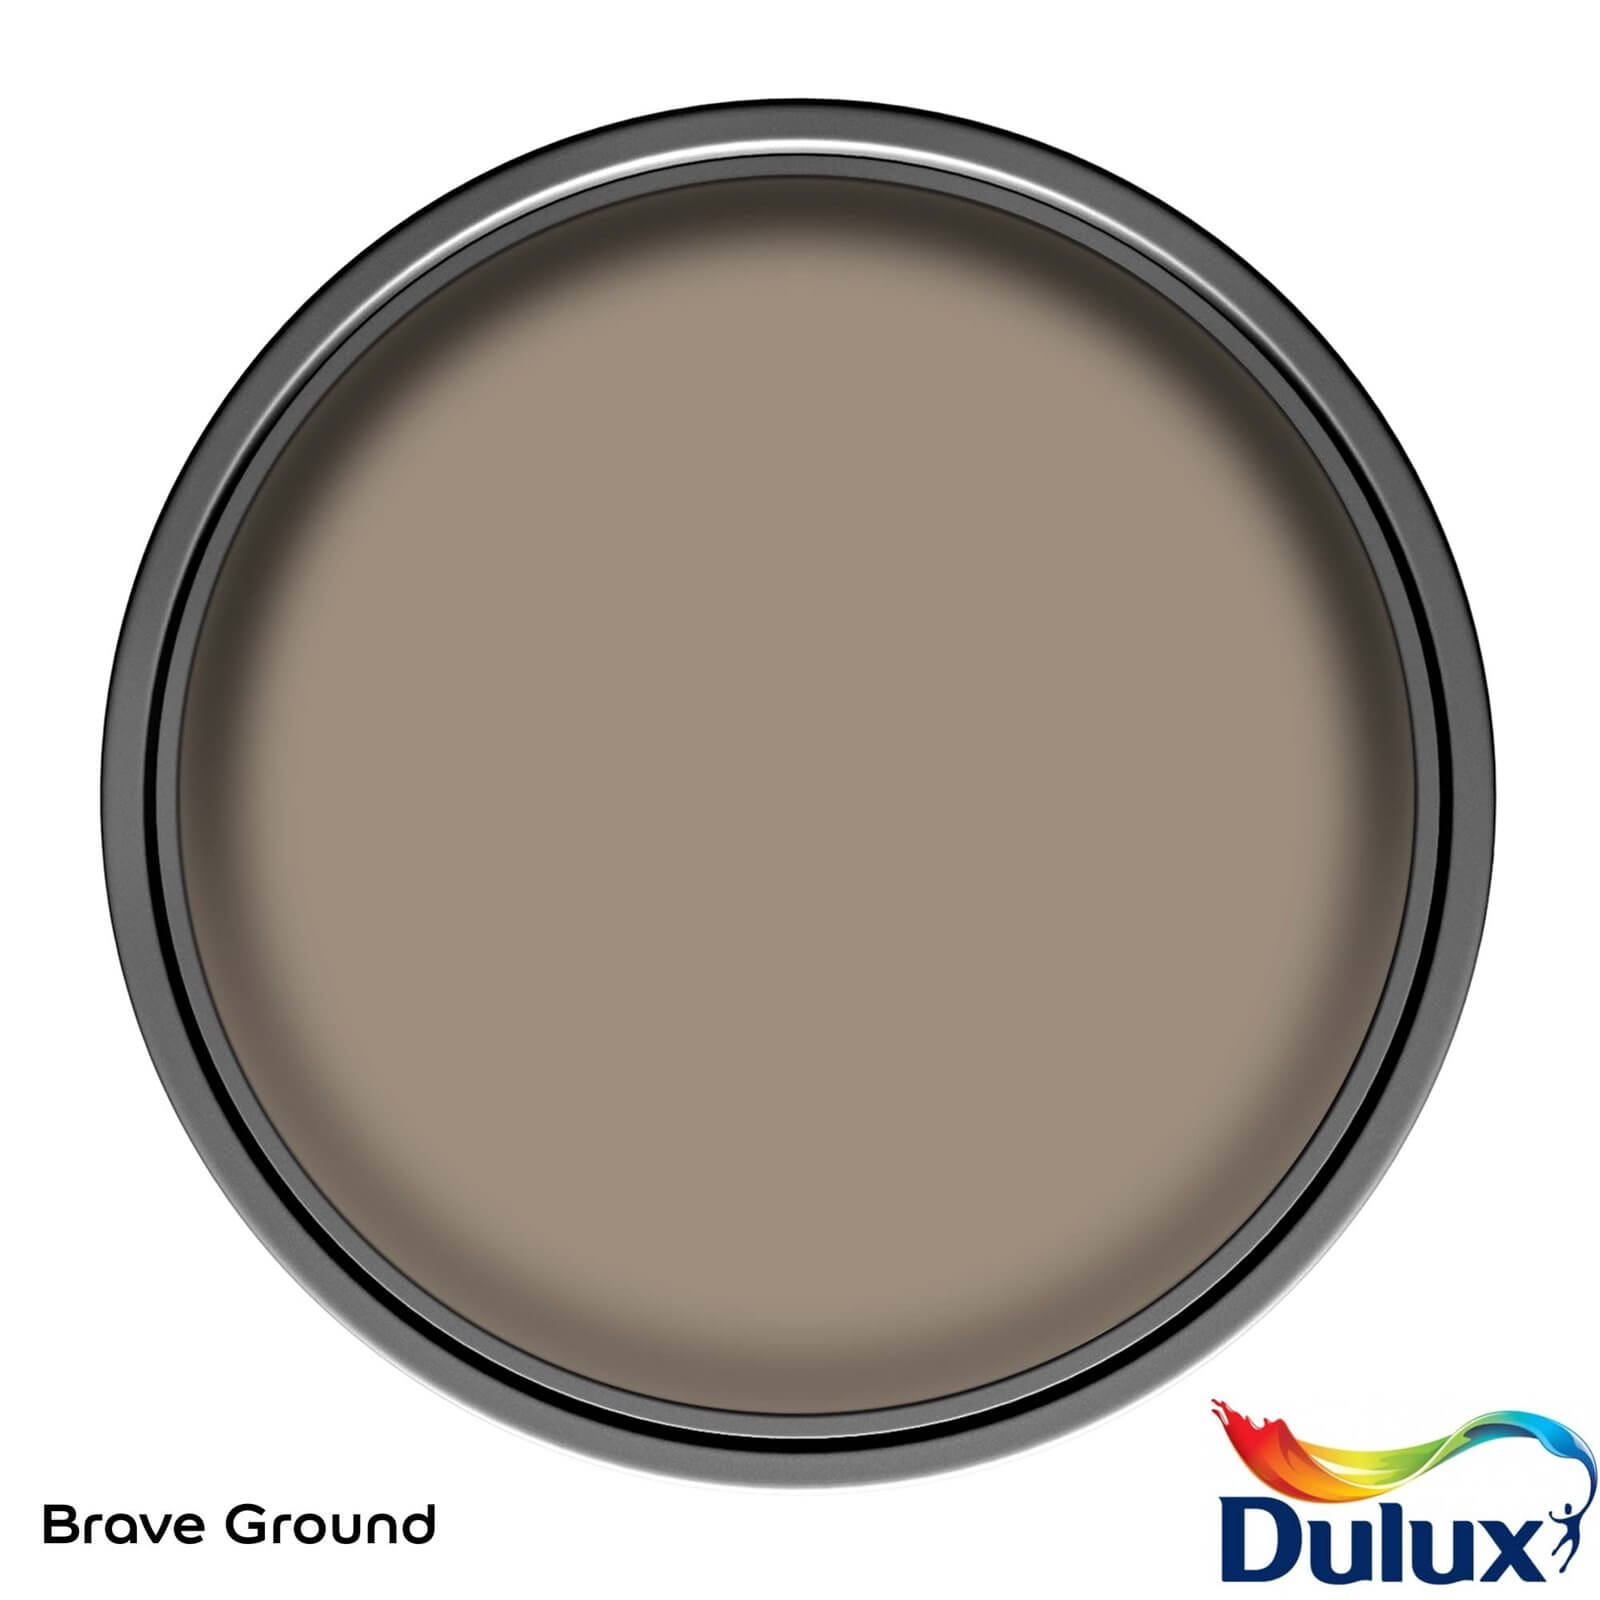 Dulux Brave Ground Matt Emulsion Paint - 2.5L